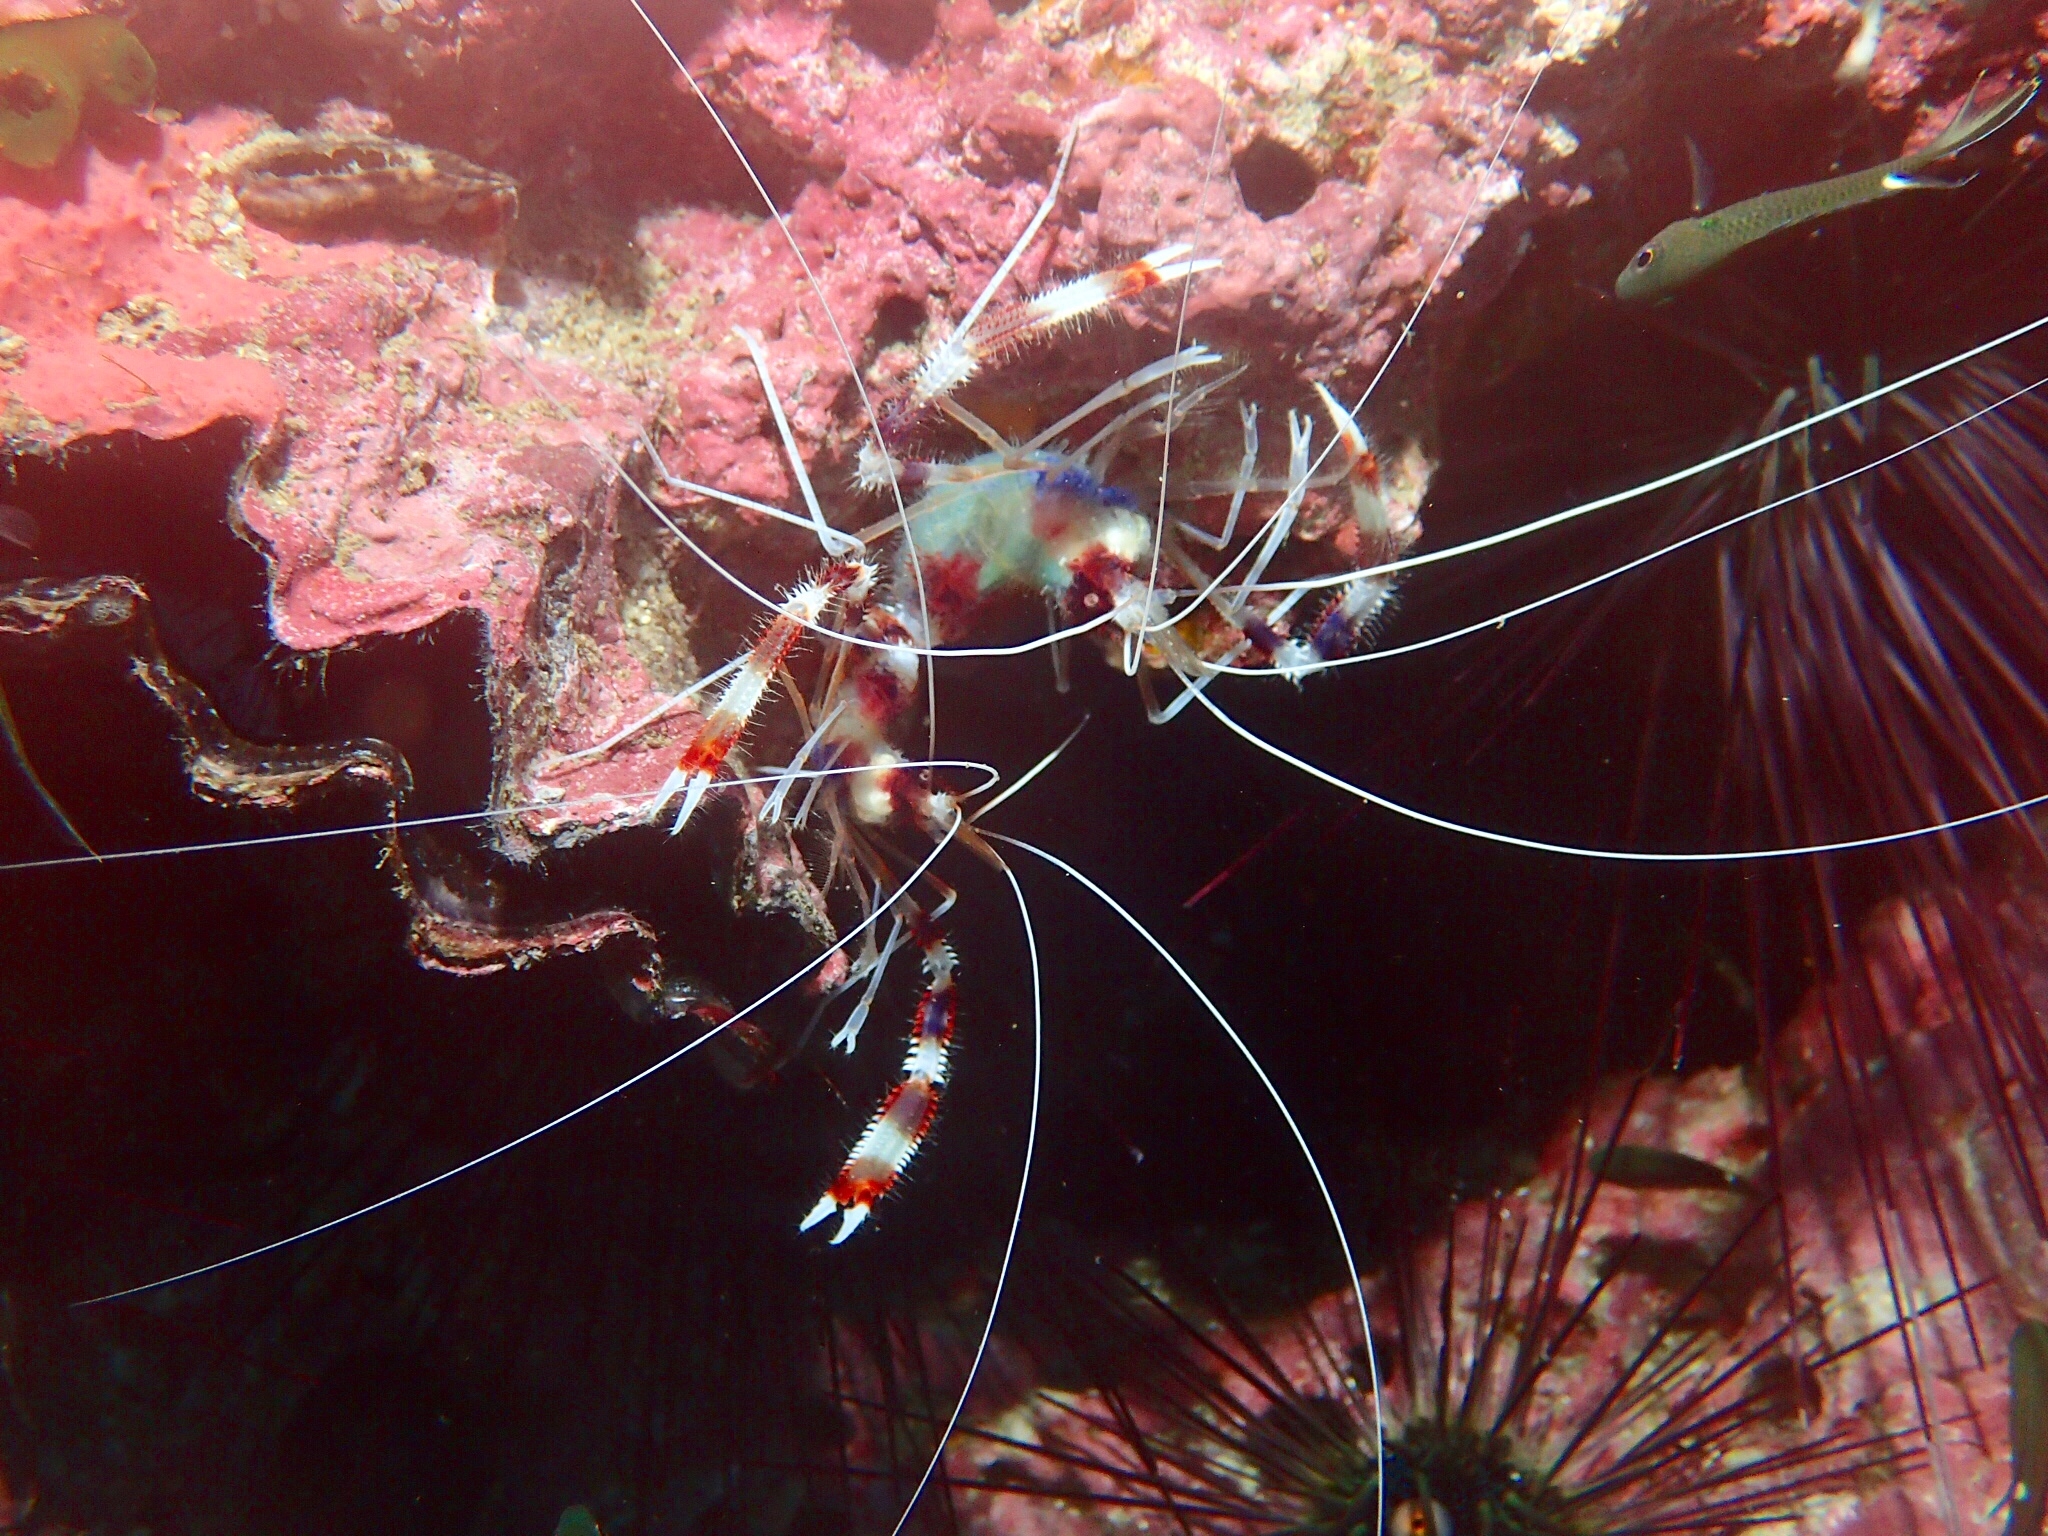 OLYMPUS DIGITAL CAMERA (c) Discover tiny underwater creatures